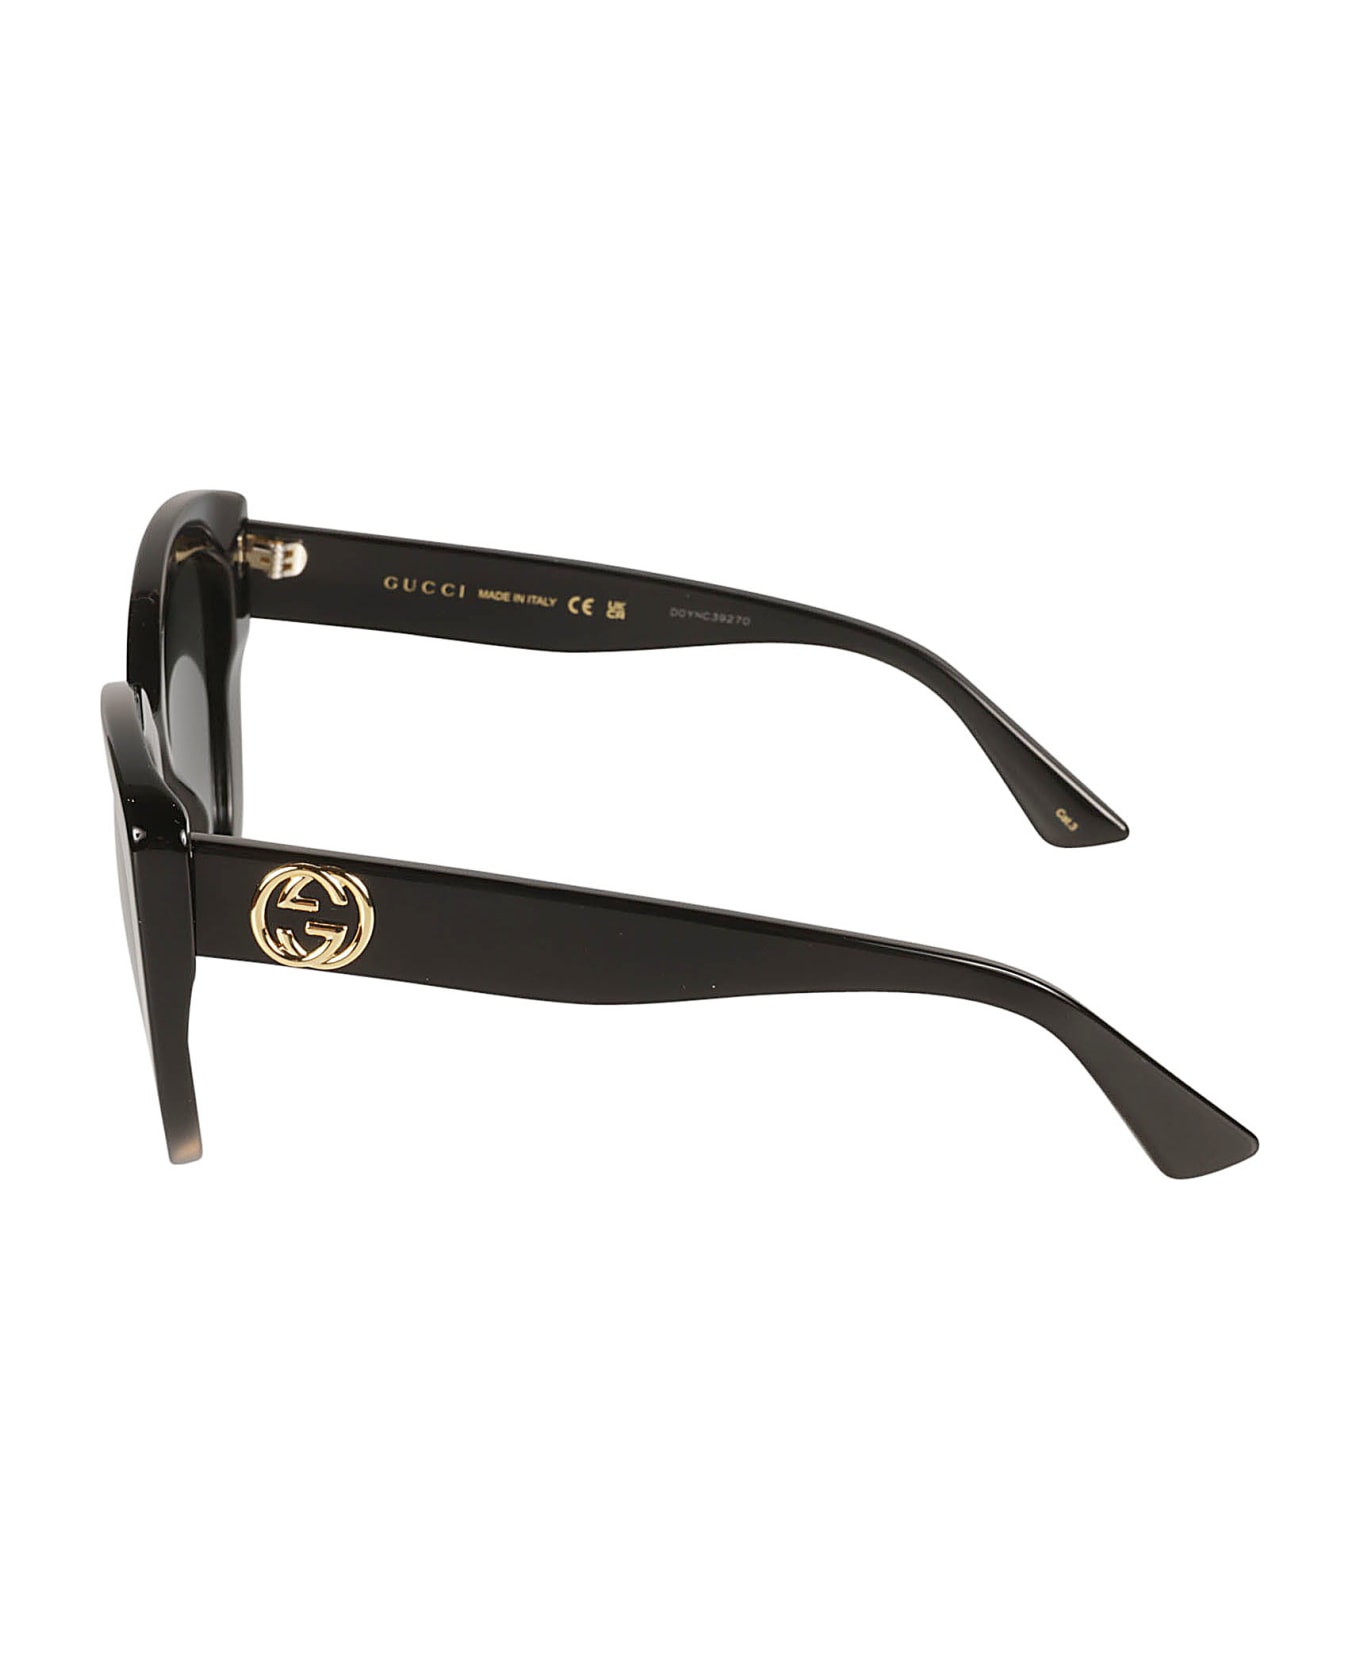 Gucci Eyewear Cat-eye Sunglasses - Black/Grey